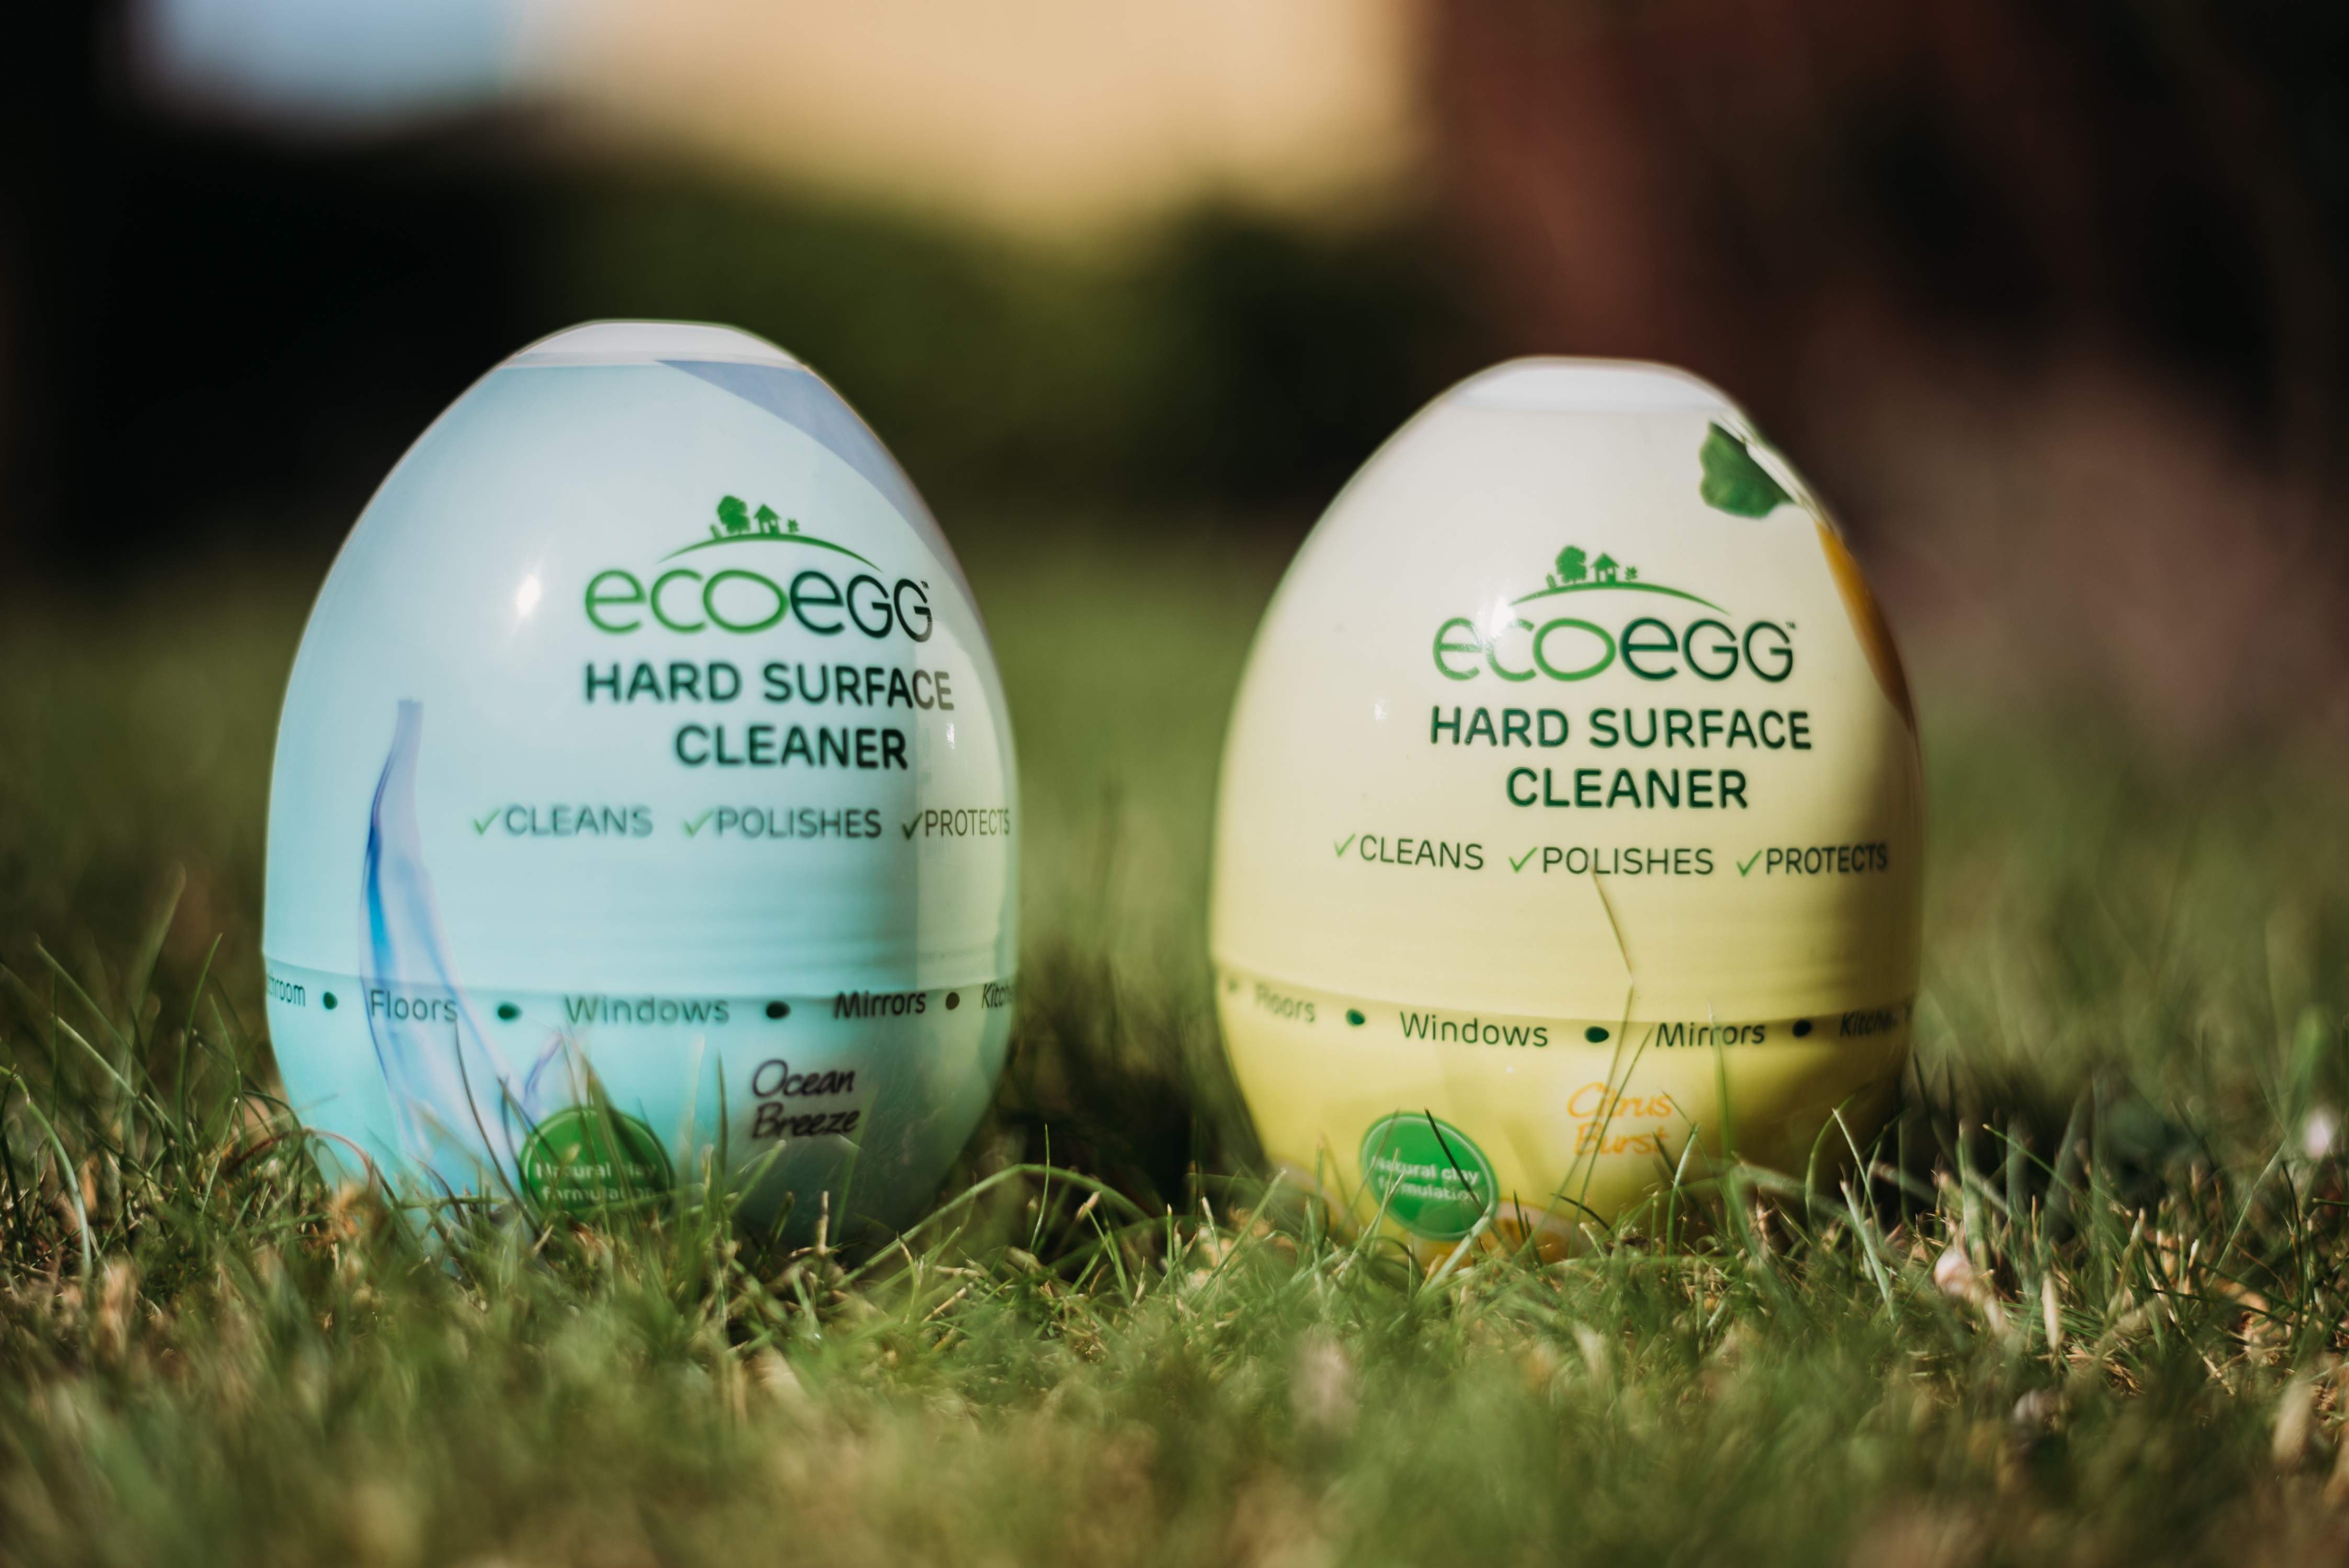 Clondalkin Flexible designs shrink sleeve for Ecoegg’s egg-shaped cleaner